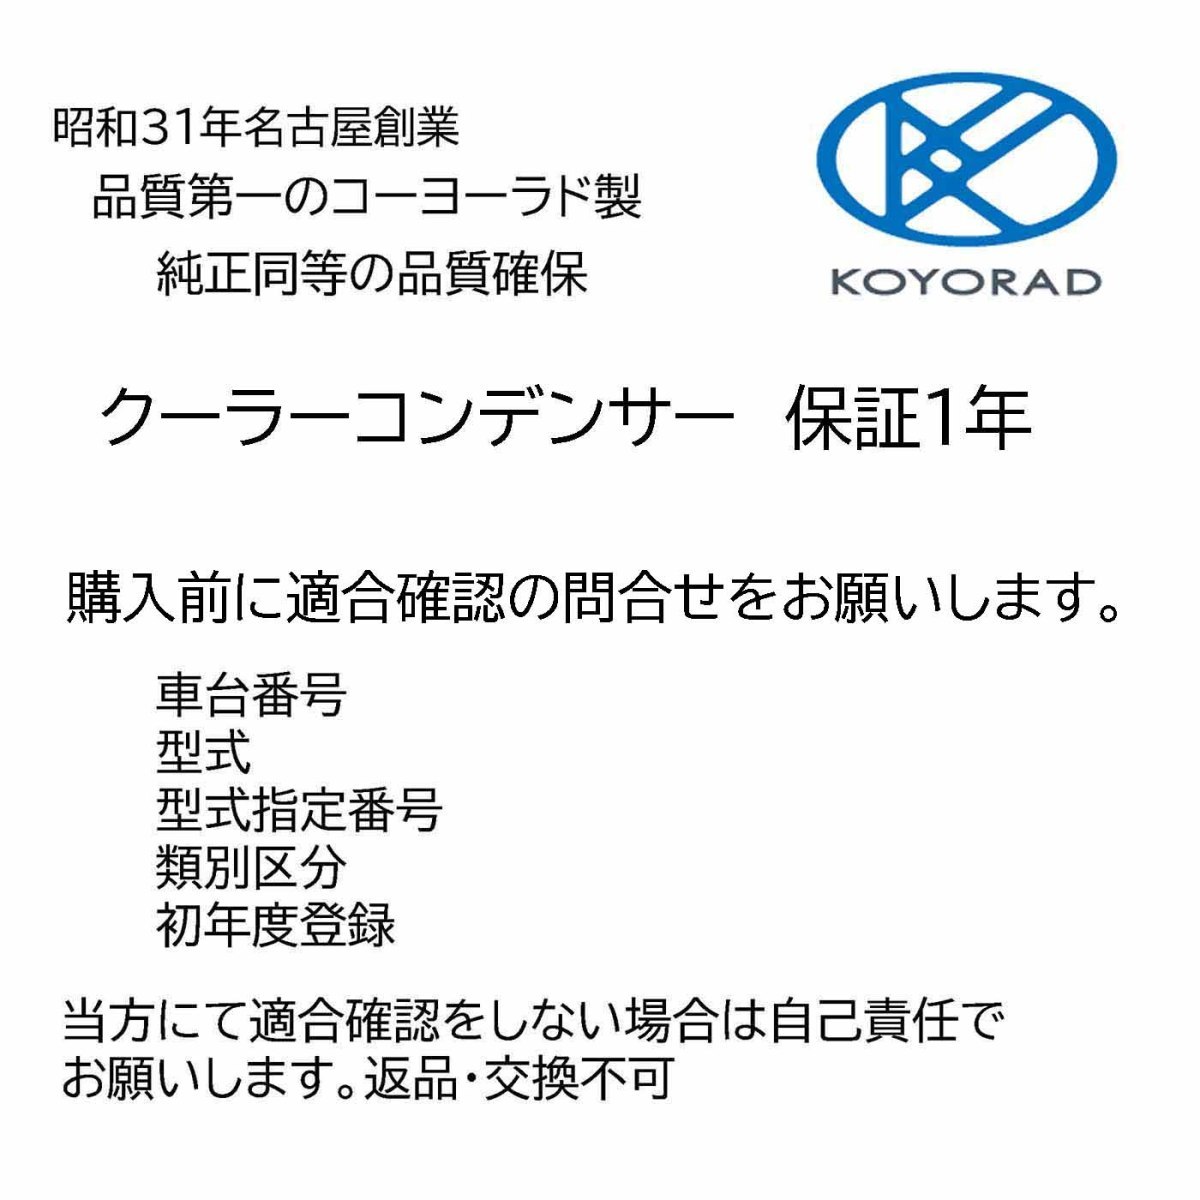 ロッキー A202S クーラーコンデンサー 社外新品 コーヨーラド KOYO製 複数有 要問い合わせ エアコン ダイハツ_画像2